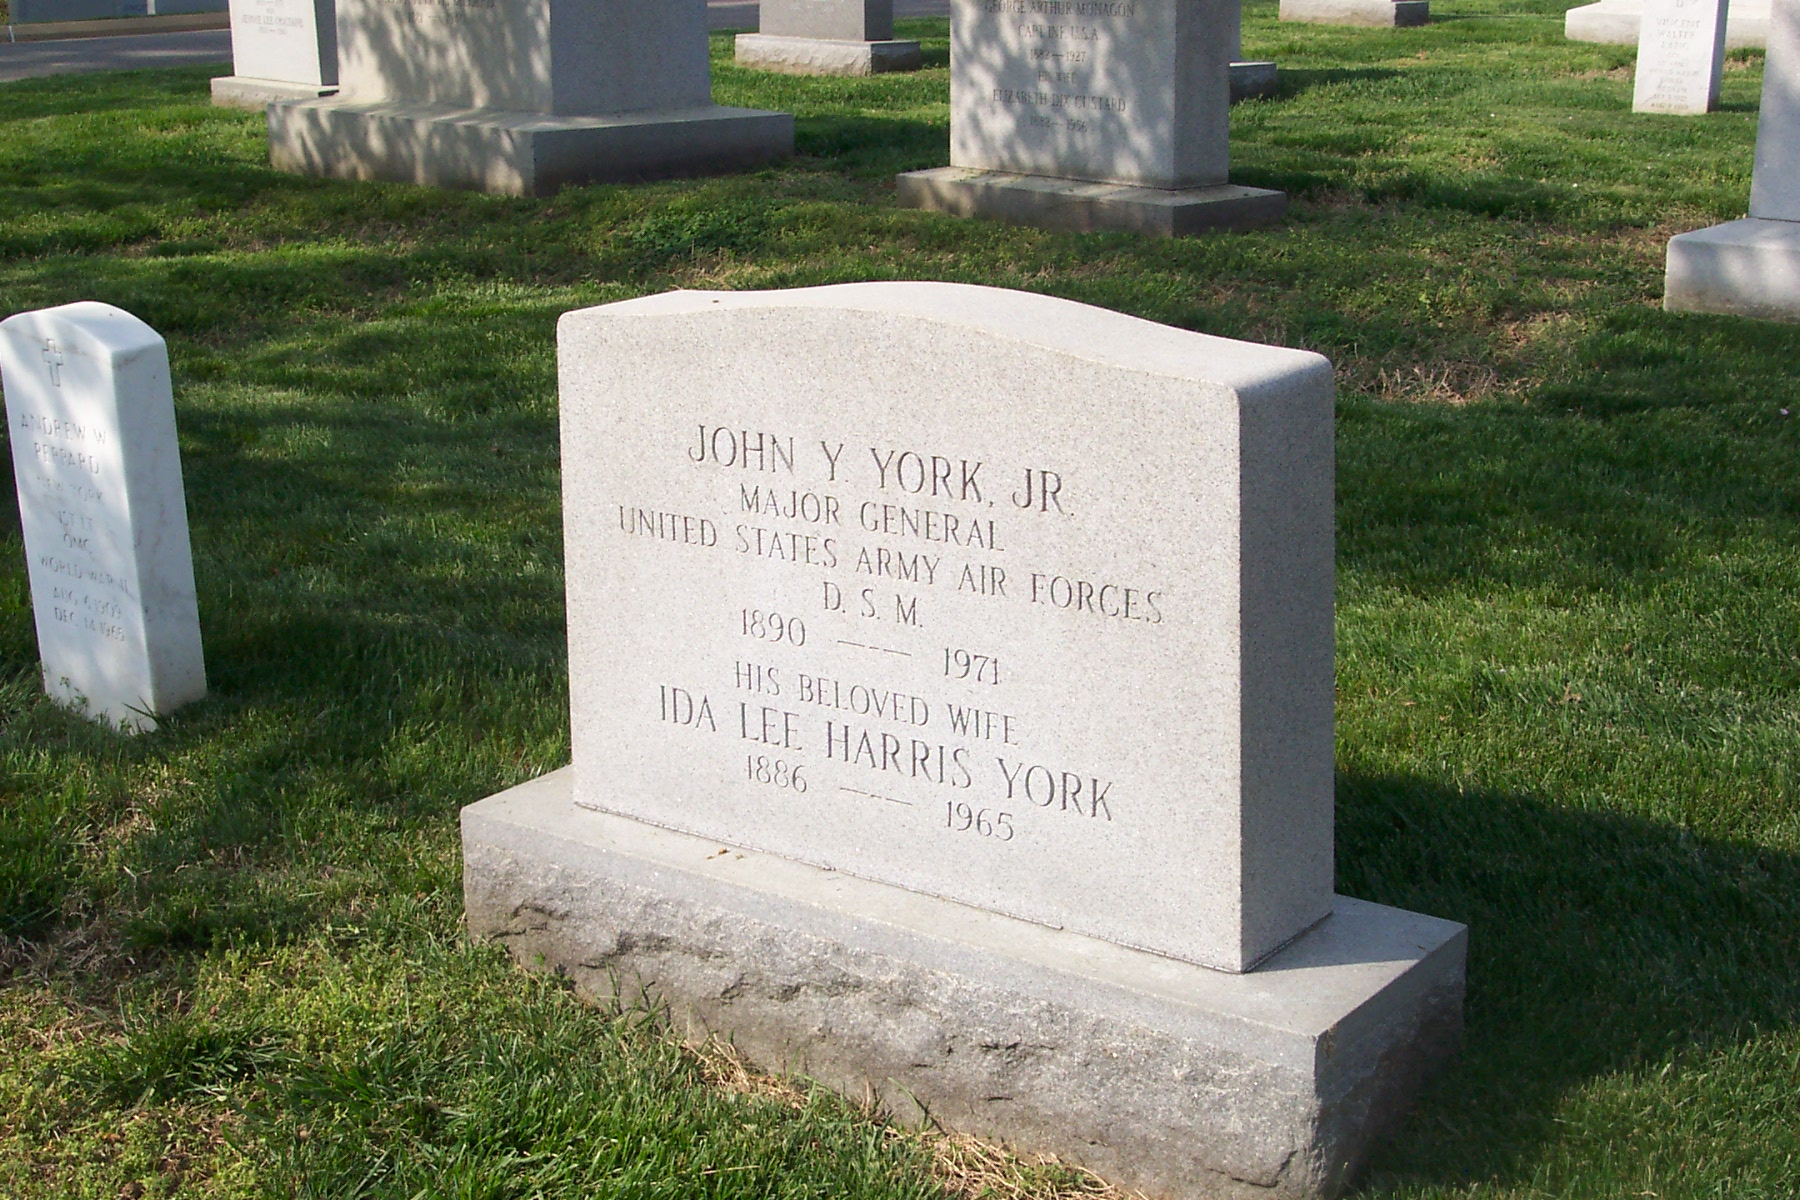 jyyorkjr-gravesite-photo-april-2004-001.jpg